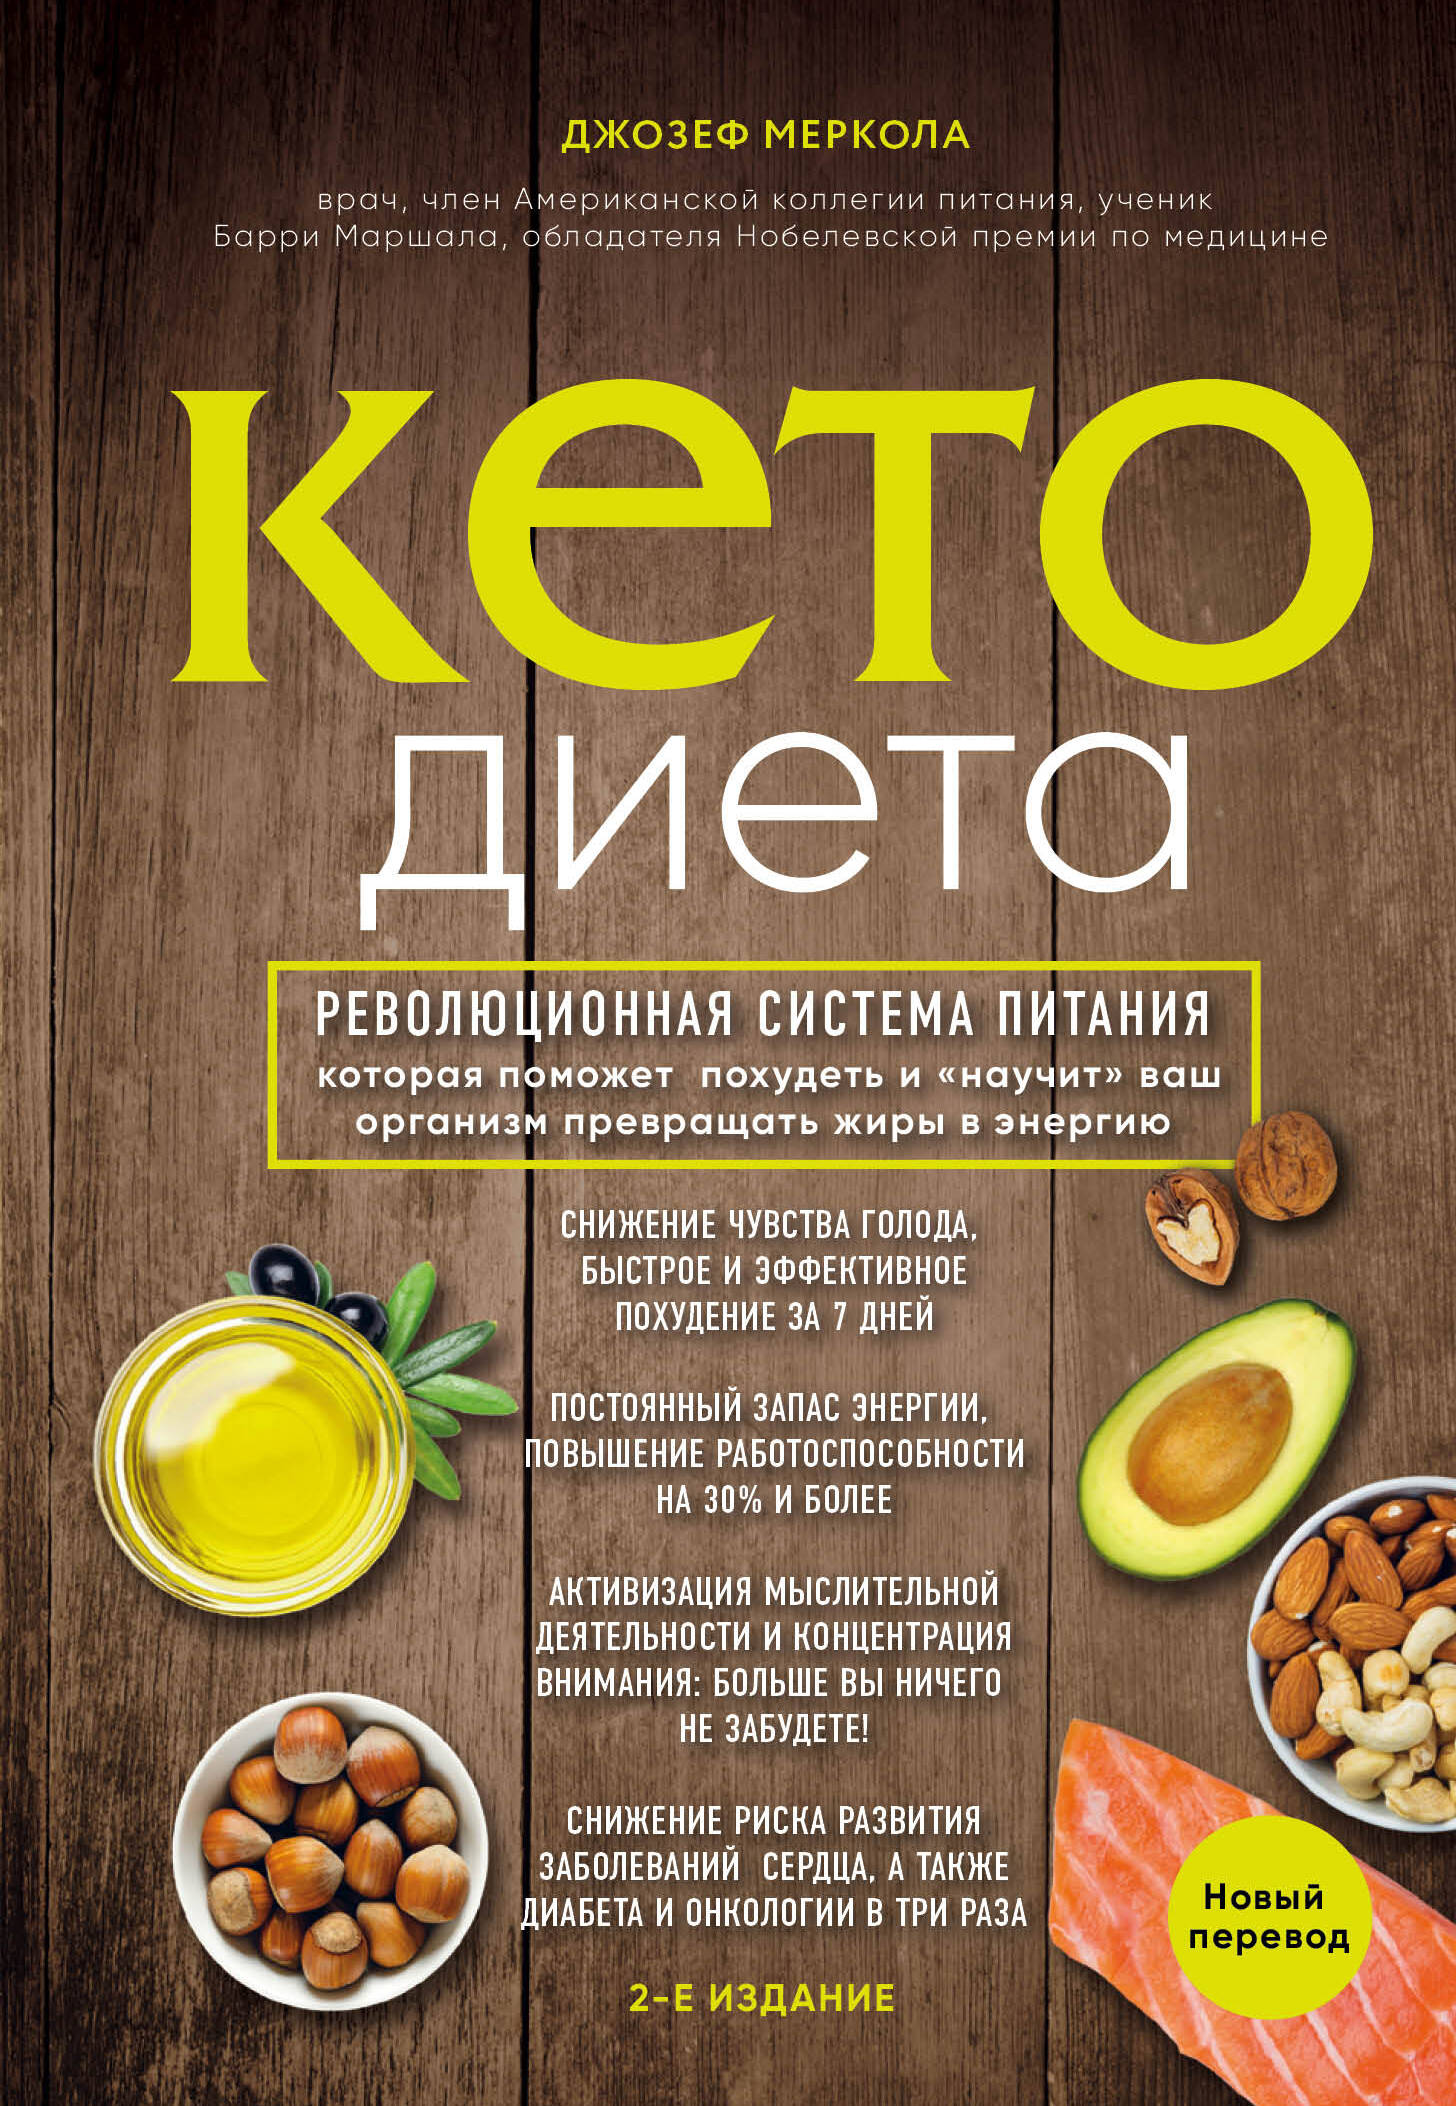 Меркола Джозеф Кето-диета. Революционная система питания, которая поможет похудеть и научит ваш организм превращать жиры в энергию. 2-е издание